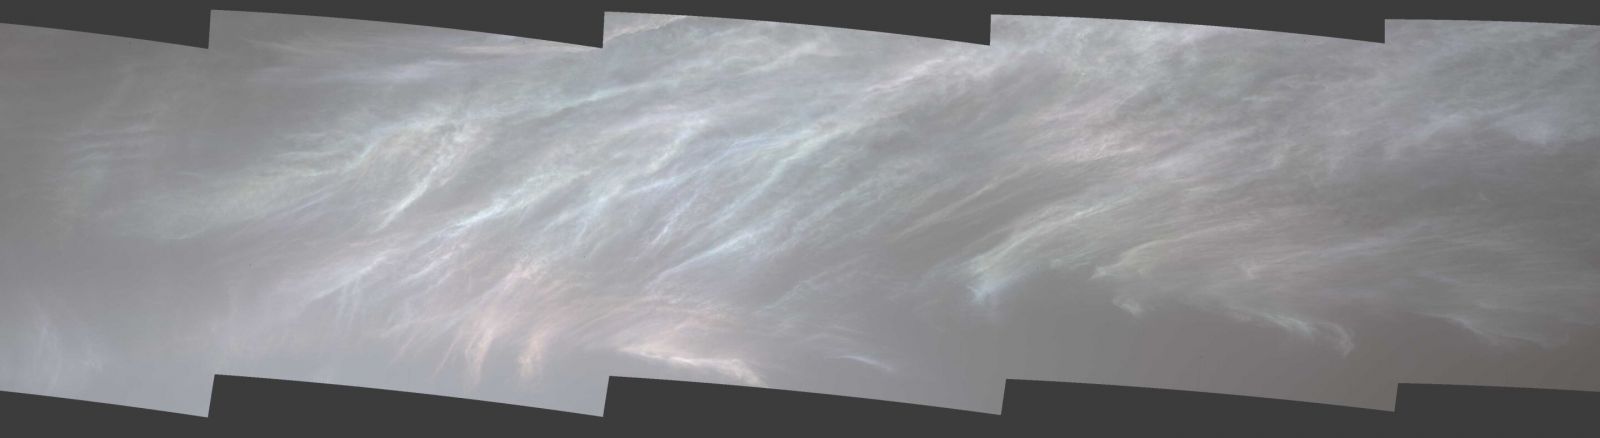 Марсоход Curiosity сделал снимок блестящих облаков Марса, фото: NASA/JPL-Caltech